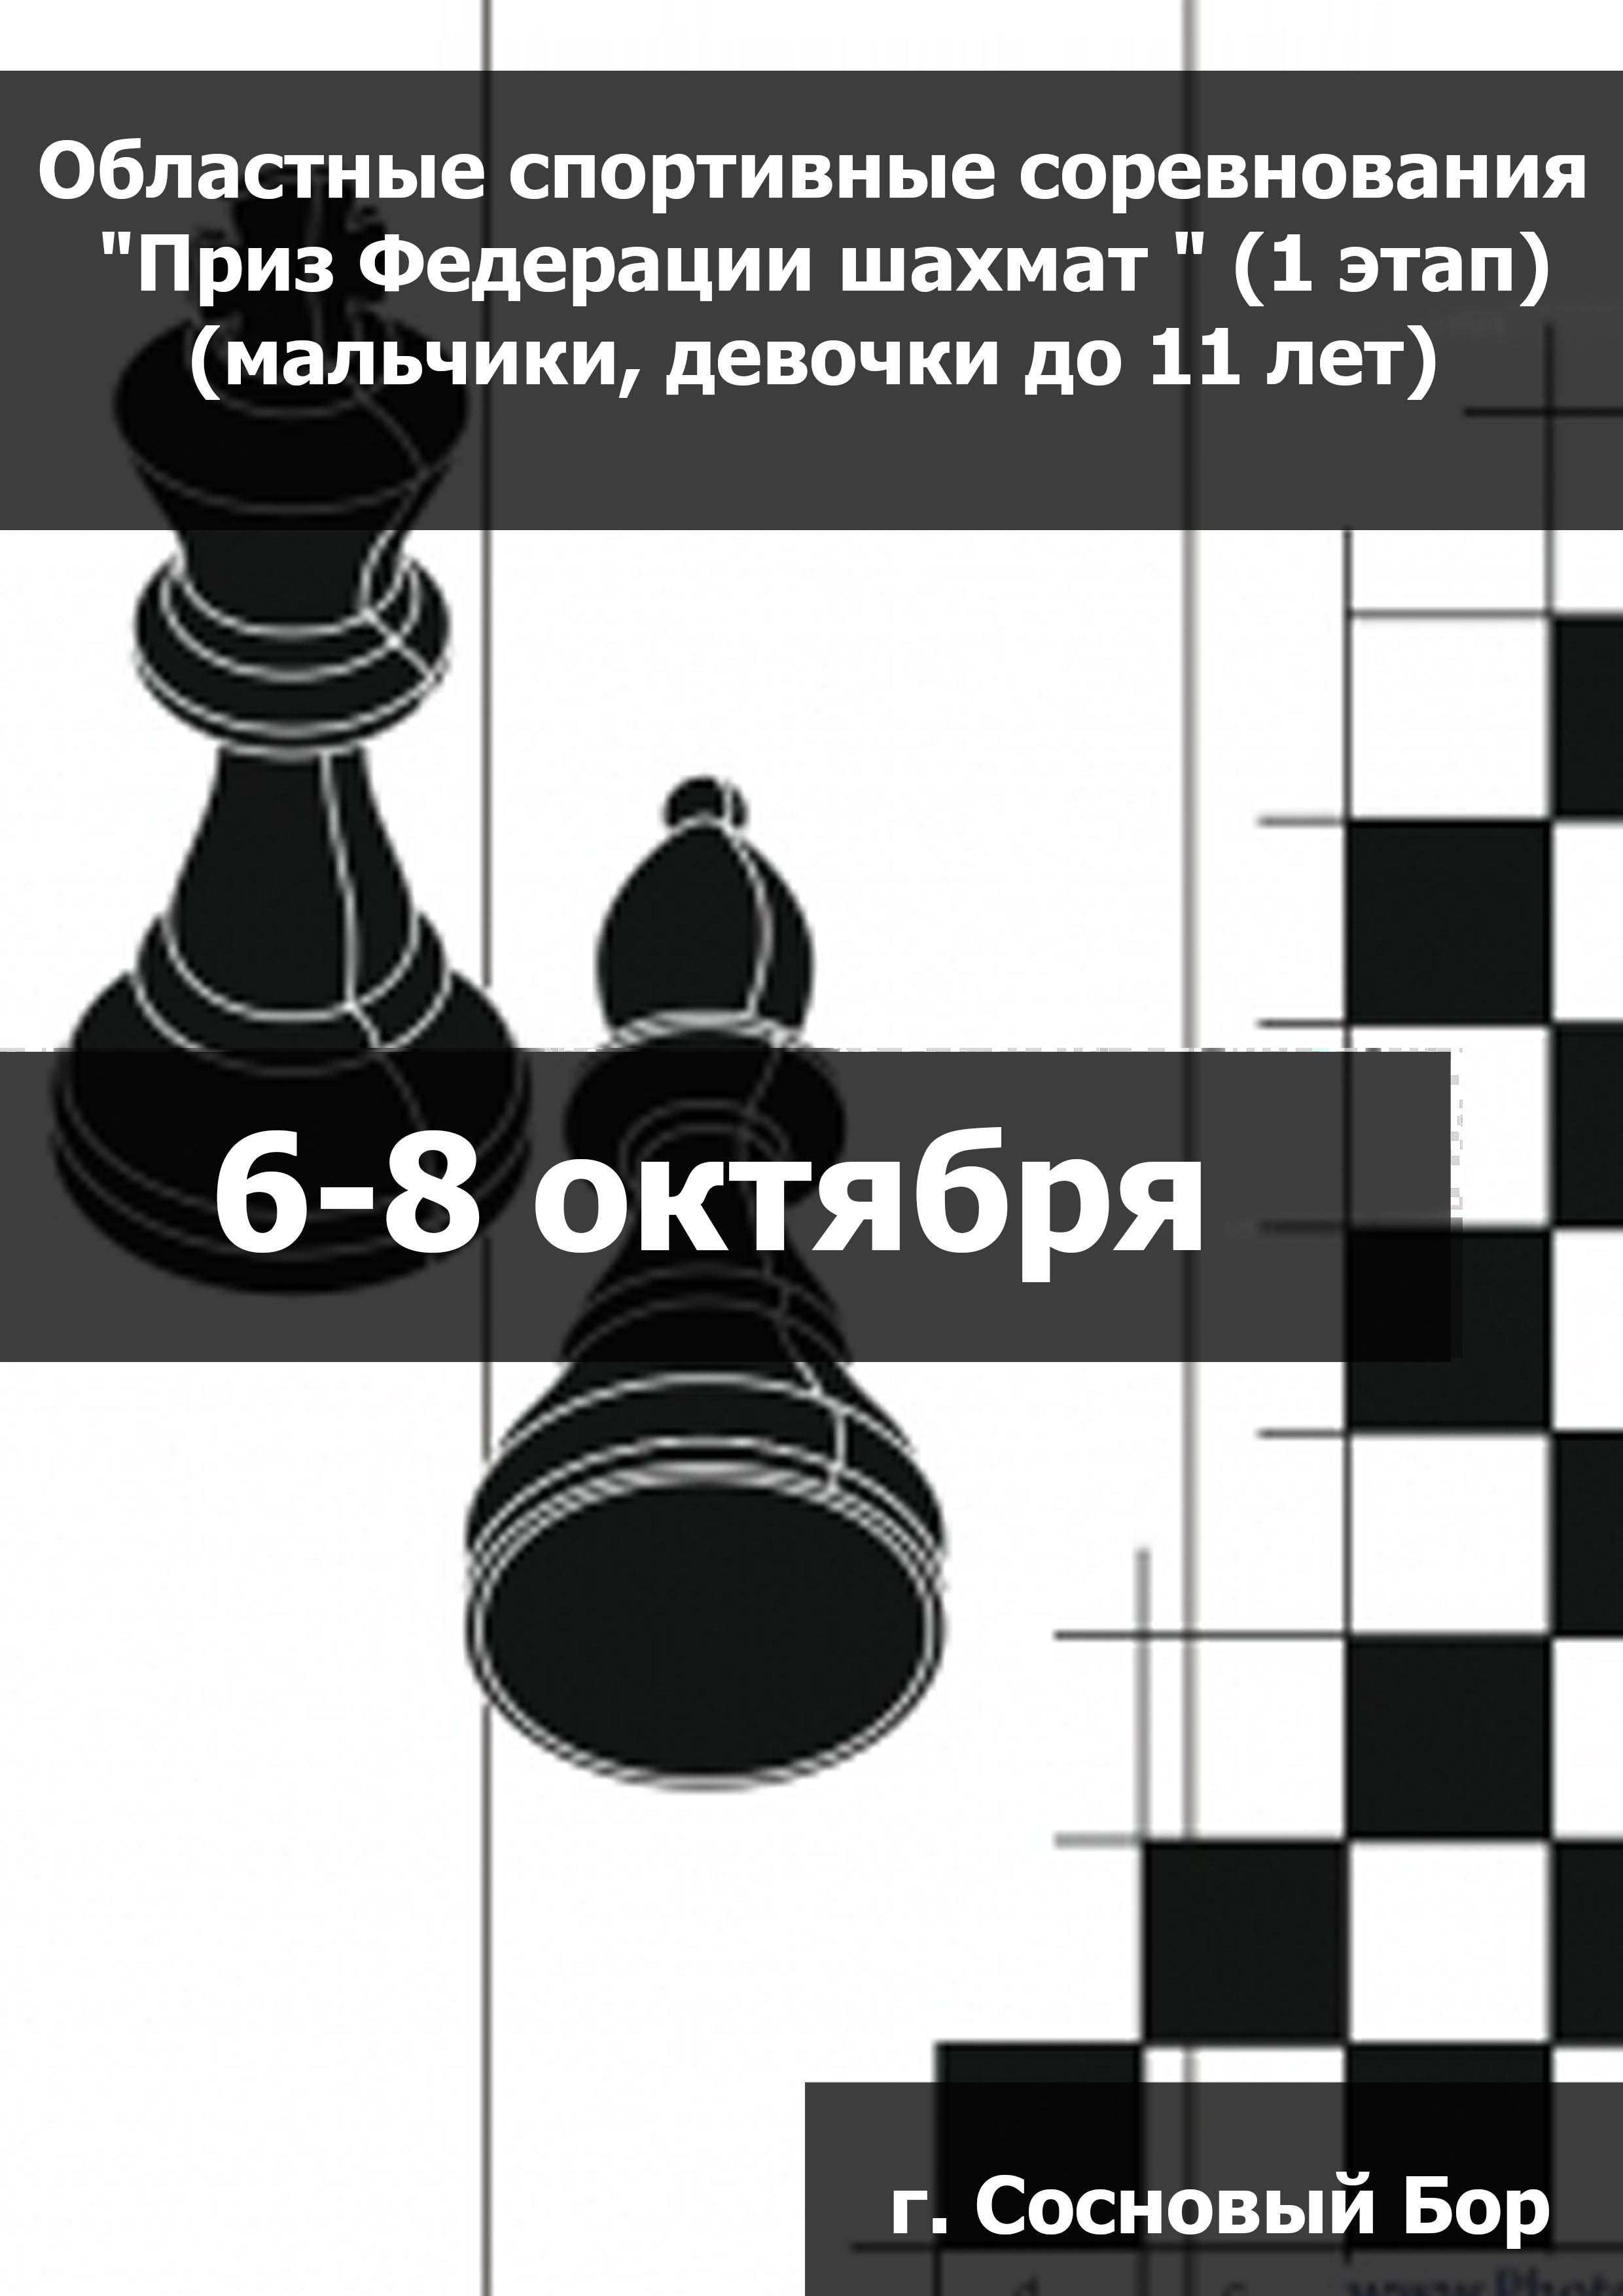 Областные спортивные соревнования "Приз Федерации шахмат " (1 этап) (мальчики, девочки до 11 лет) 6  ጥቅምት ግምገማ
 2023  ዓመት
 